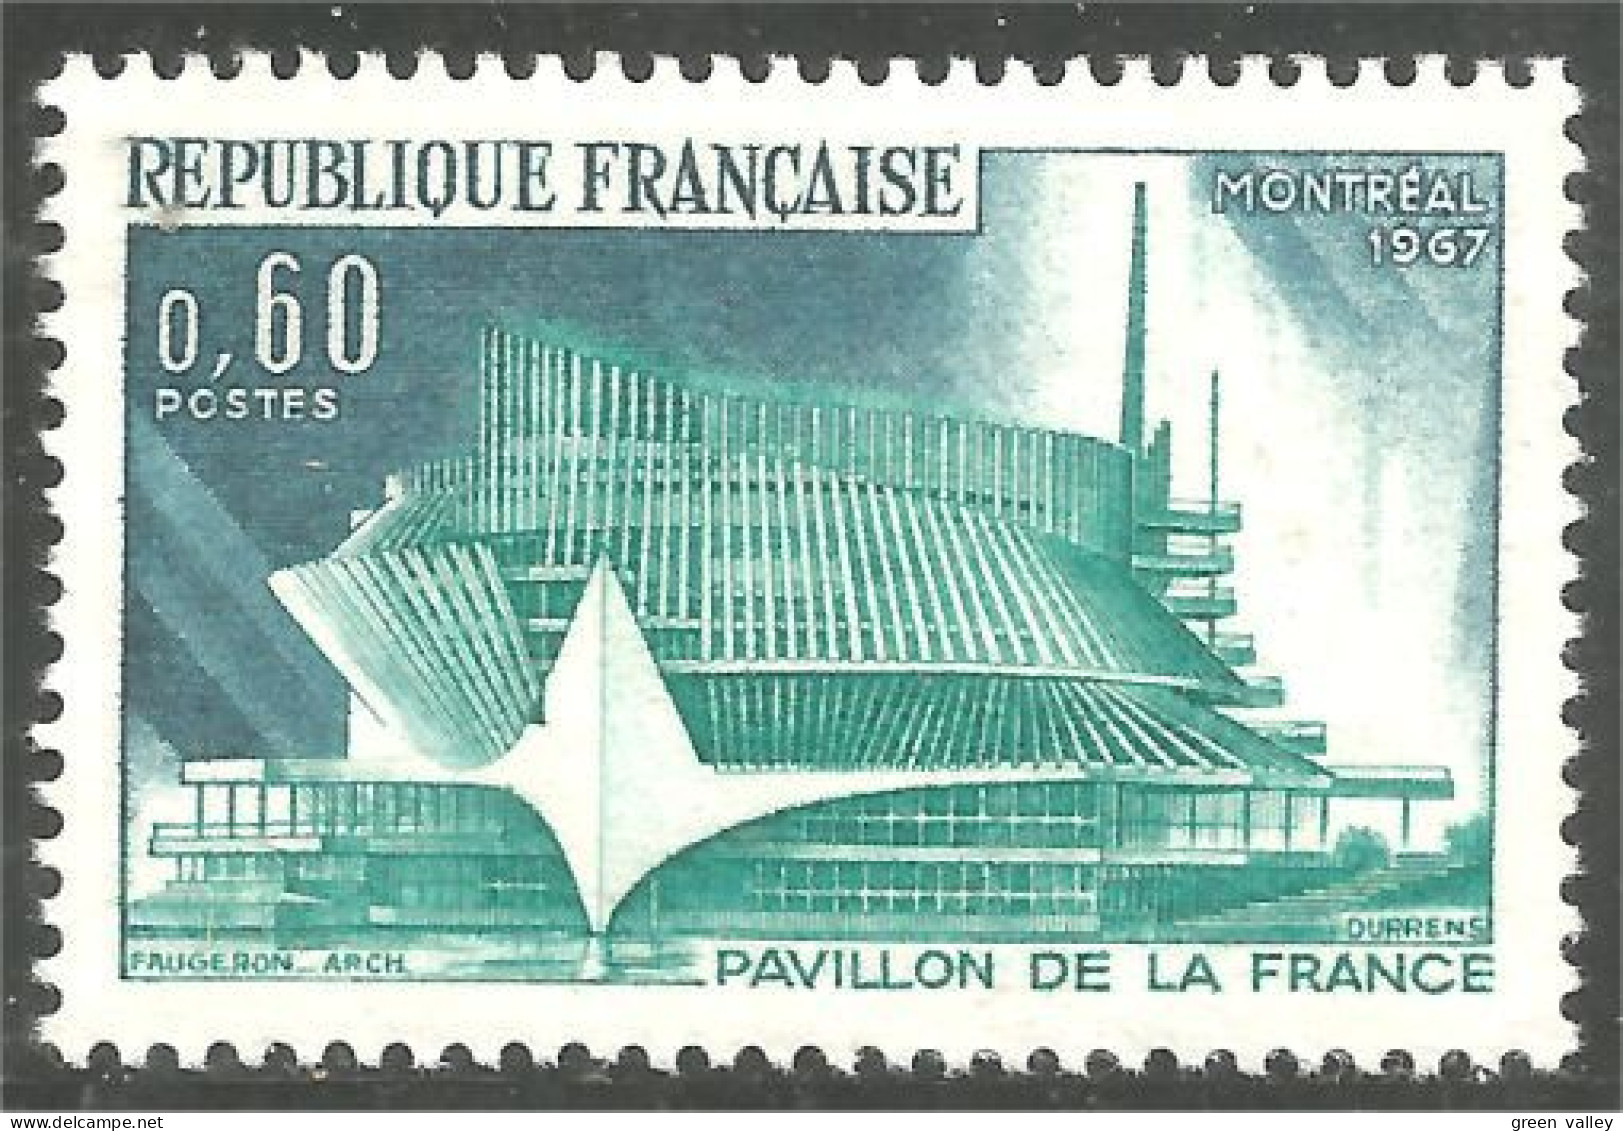 345 France Yv 1519 EXPO 67 Exposition De Montréal Canada MNH ** Neuf SC (1519-1b) - 1967 – Montréal (Canada)